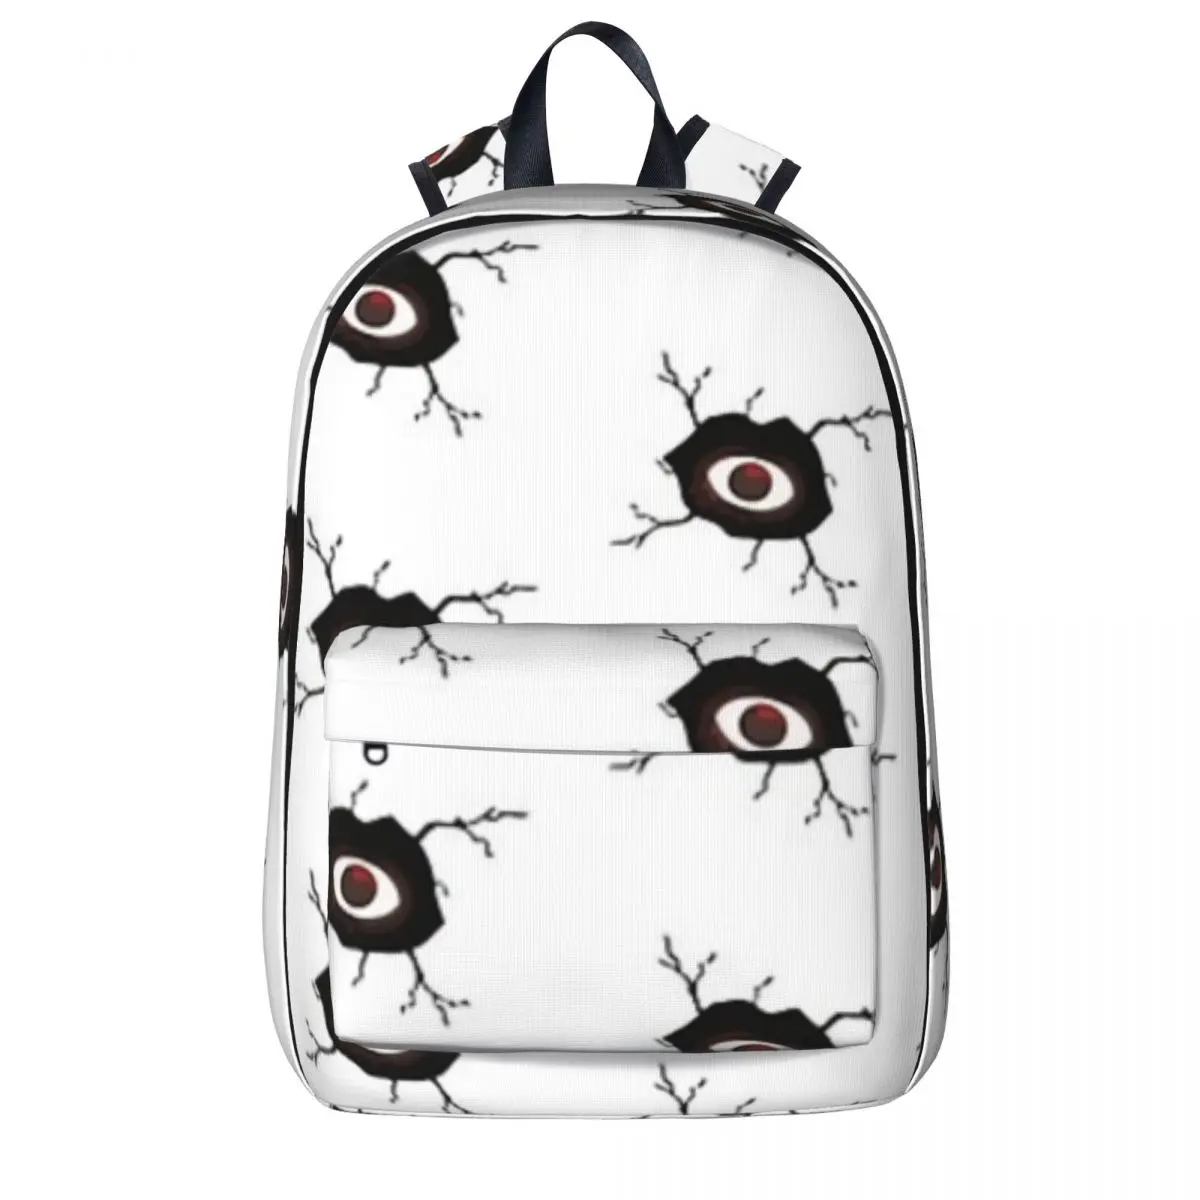 

DOORS - Seek Eye Hide And Seek Horror Eyes Backpacks Boys Girls Bookbag Students School Bags Cartoon Children Rucksack Travel